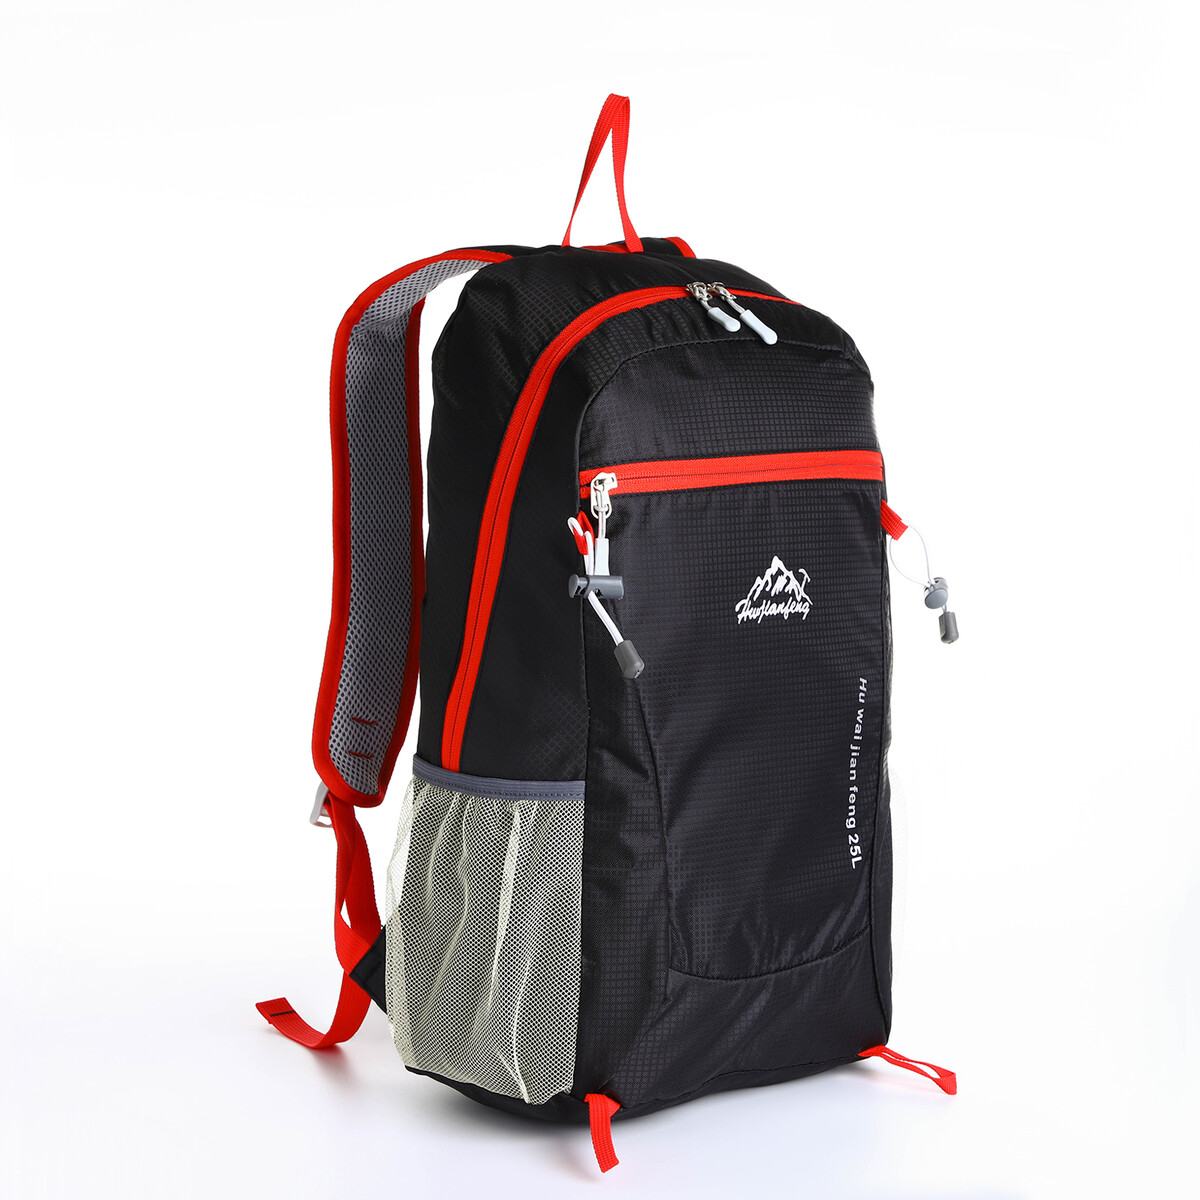 Рюкзак туристический 25л, складной, водонепроницаемый, на молнии, 4 кармана, цвет черный рюкзак складной отдел на молнии наружный карман 2 боковых кармана